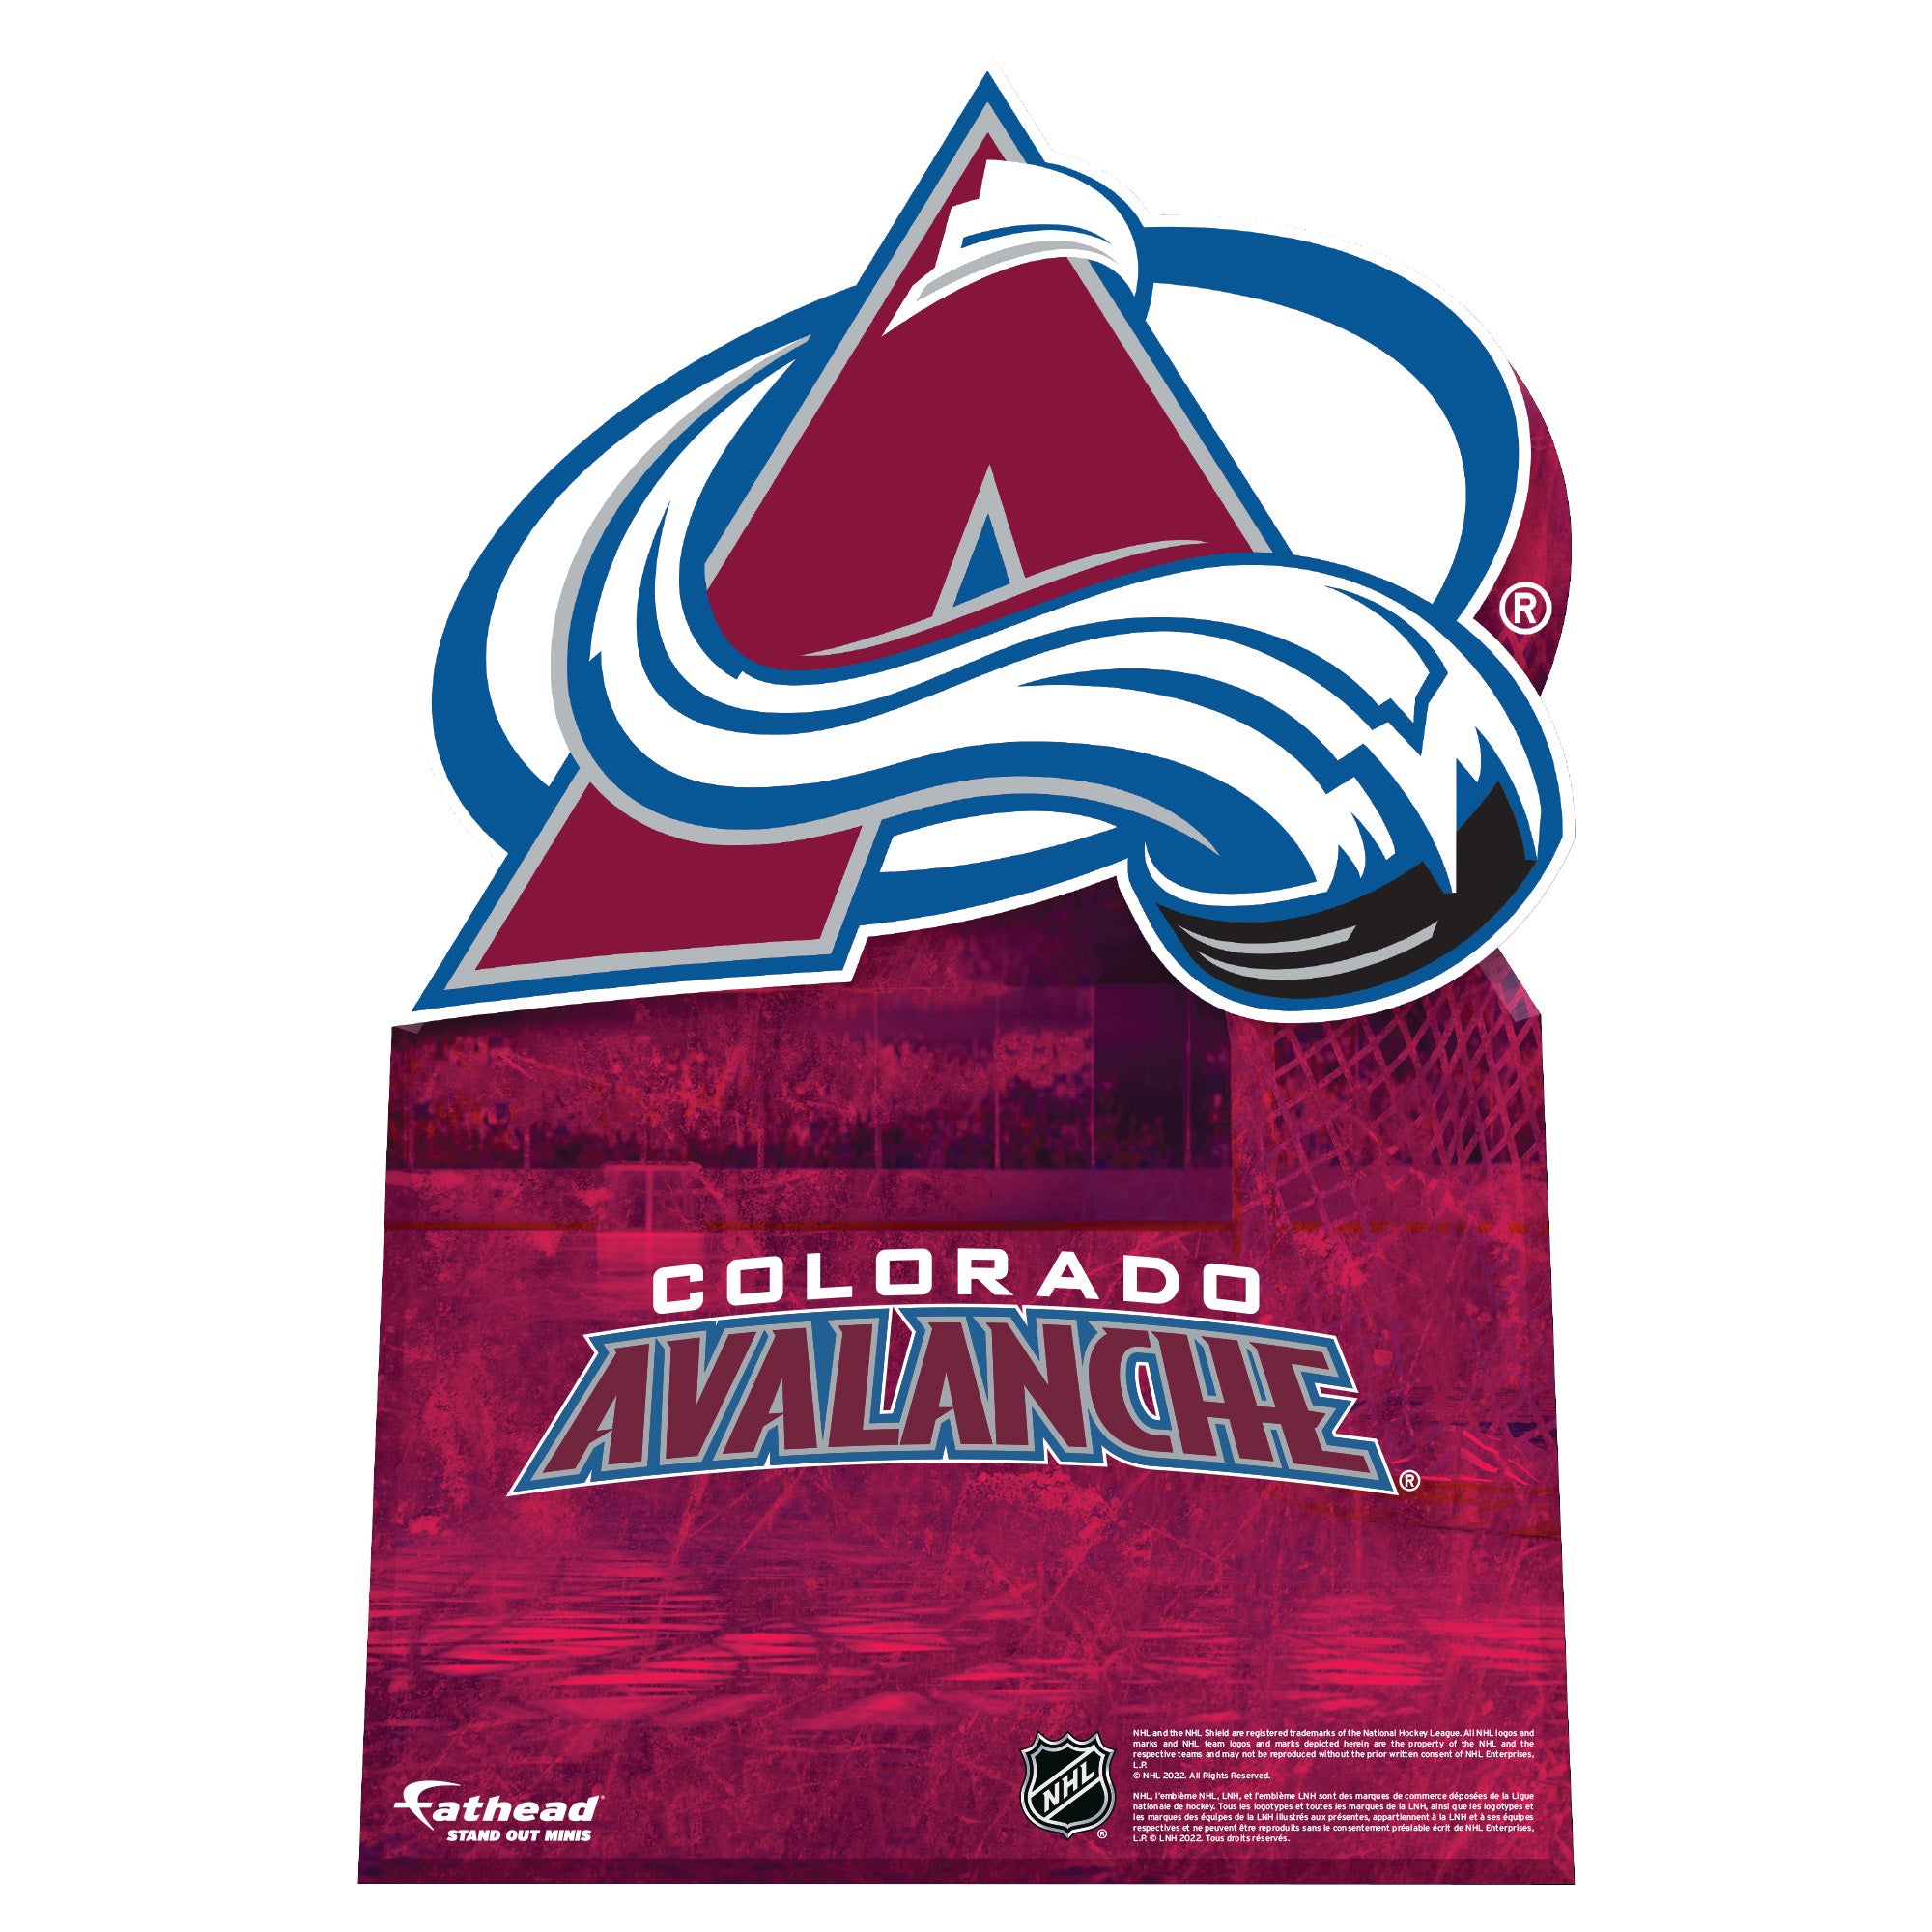 Colorado Avalanche NHL Hockey Paw Logo Car Bumper Sticker - 3'